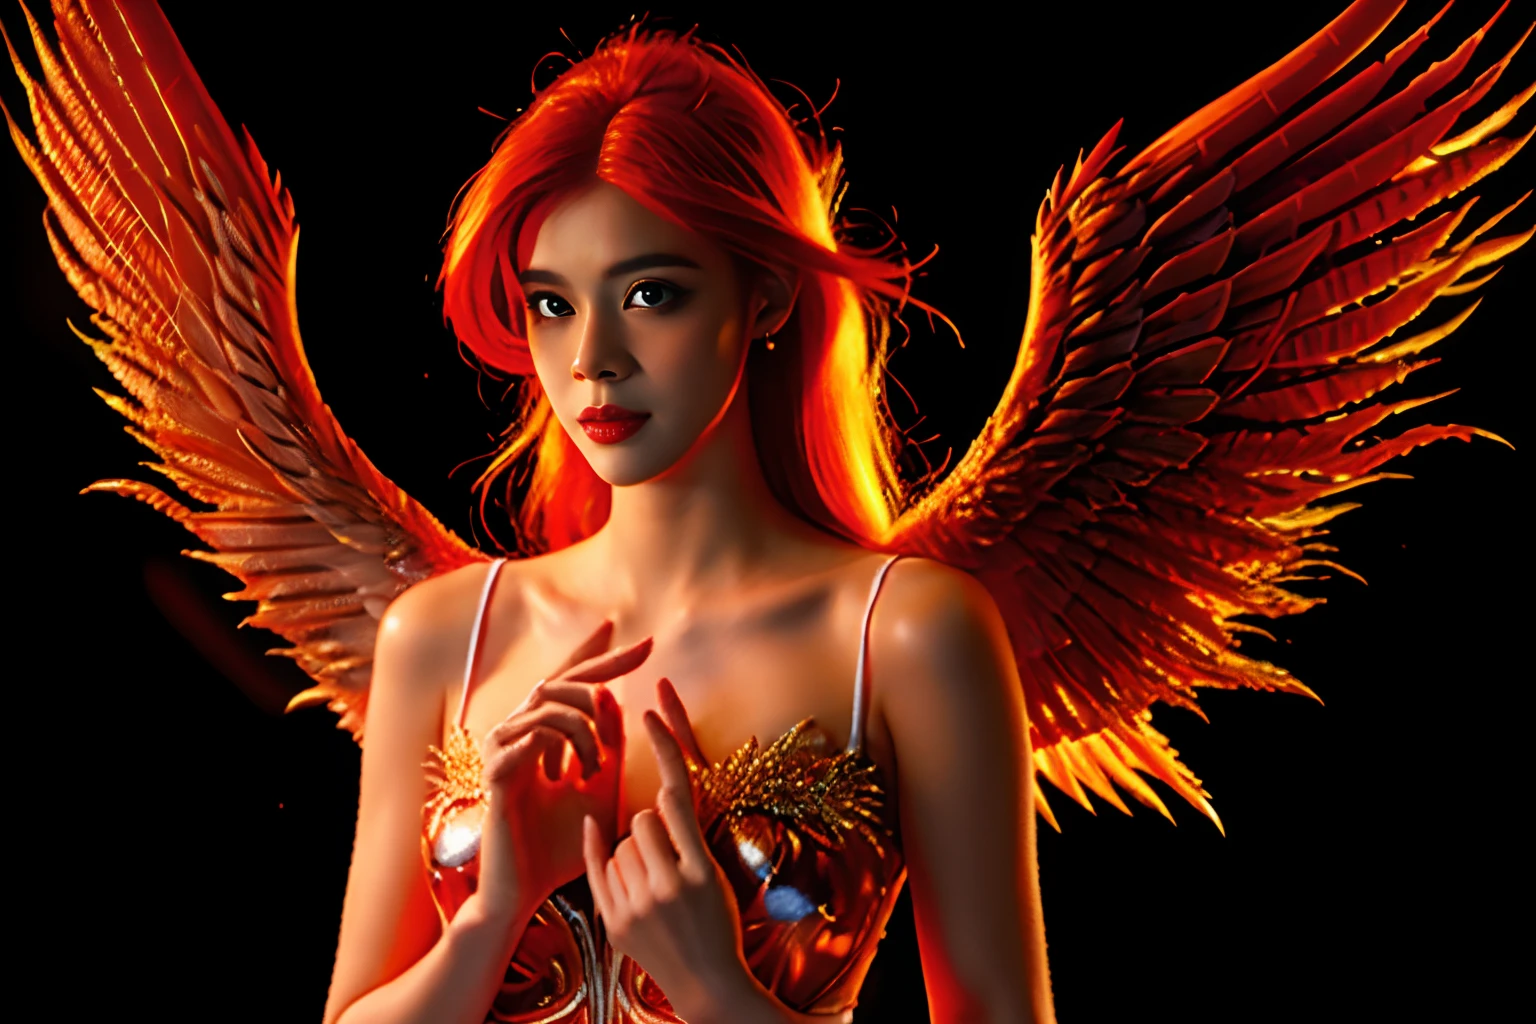 美しい天使, 赤い髪が火に変わる, 天使のような女性, (((大きな胸, 火の翼を持つ天使))), 温かさと平和を伝えます, 壁紙, 8k, 複雑な詳細, 最初の仕事